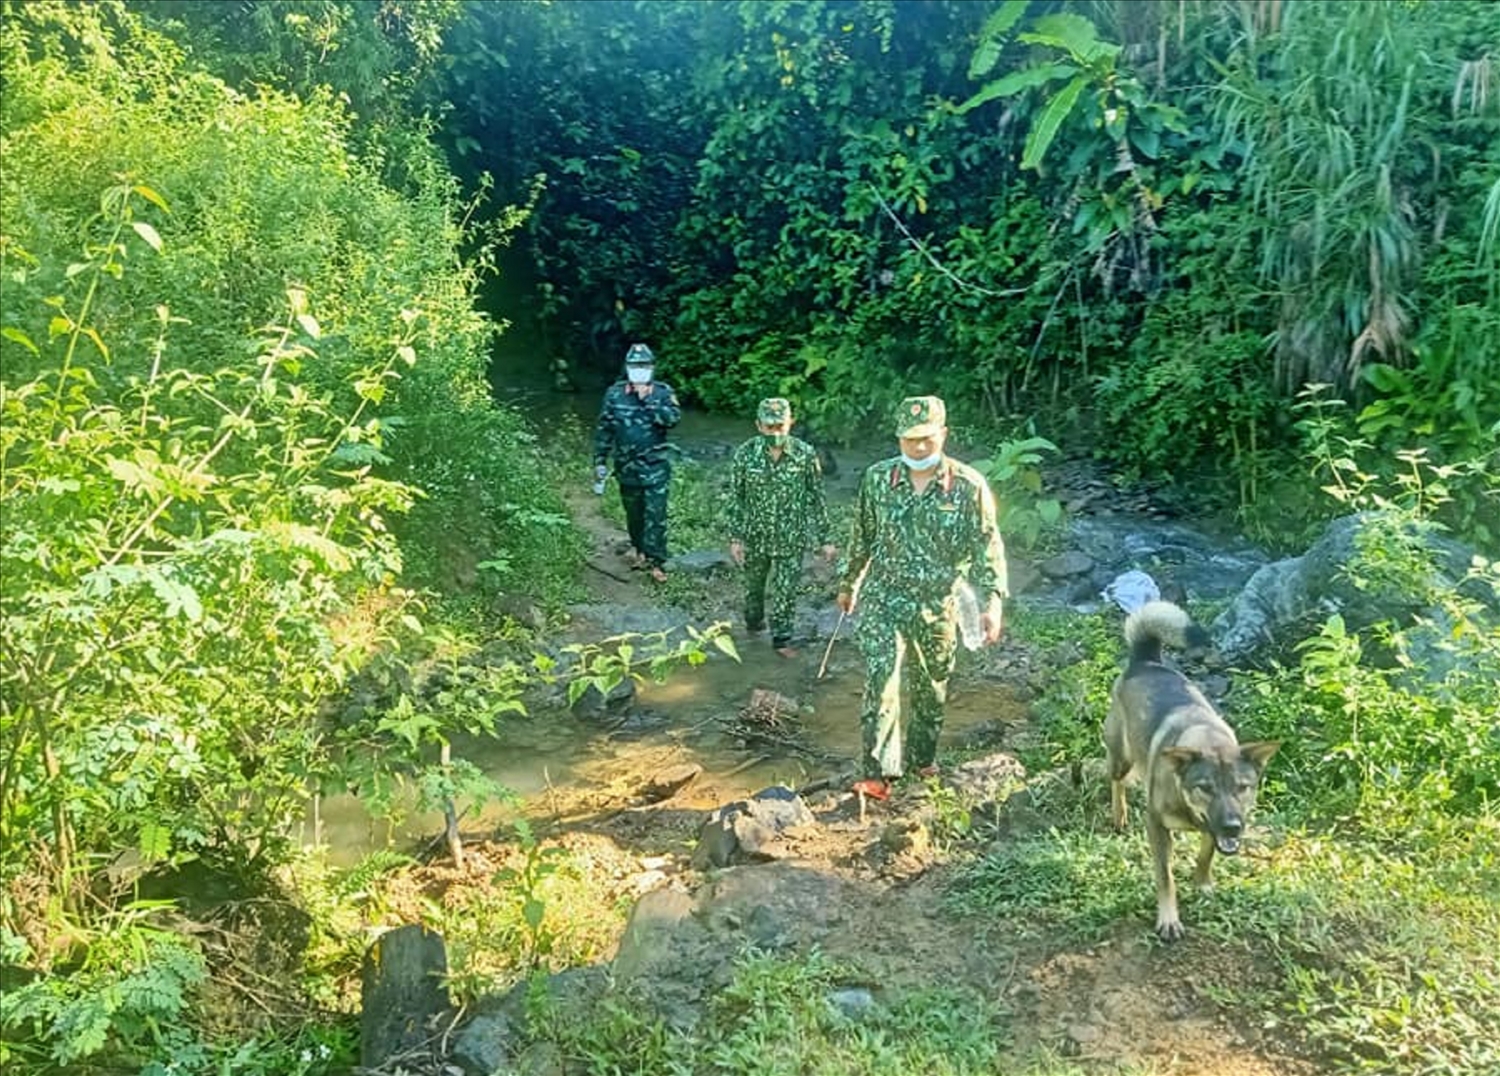 Cán bộ, chiến sĩ Đồn Biên phòng Nhâm băng rừng lội suối làm nhiệm vụ tuần tra